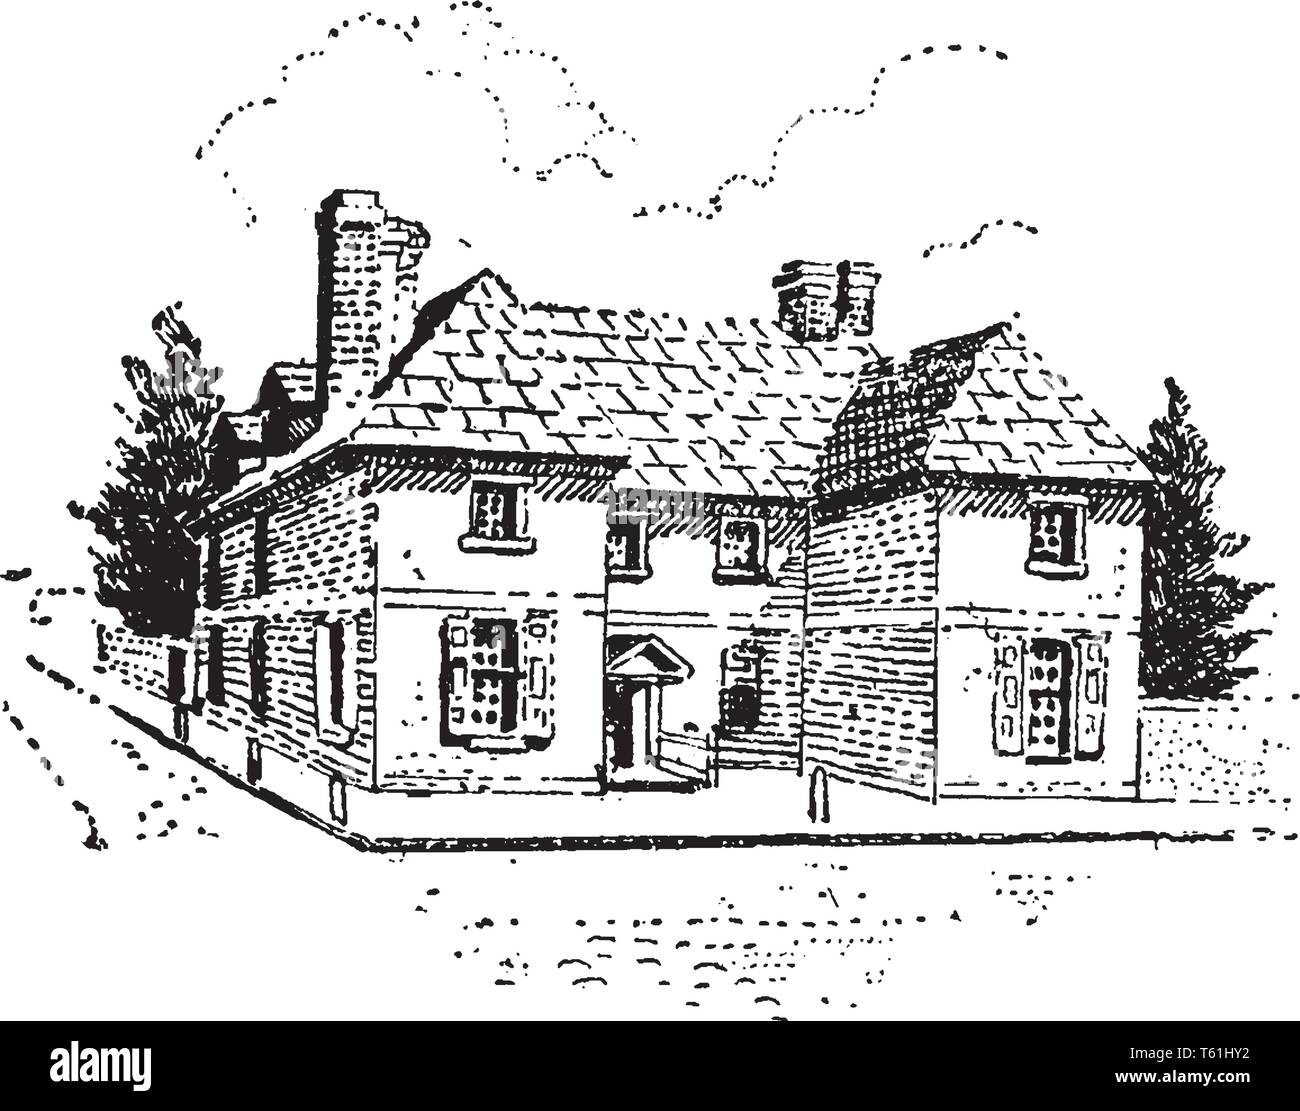 Maison de William Penn qui était un entrepreneur immobilier, philosophe à Philadelphie,vintage dessin ou gravure illustration. Illustration de Vecteur